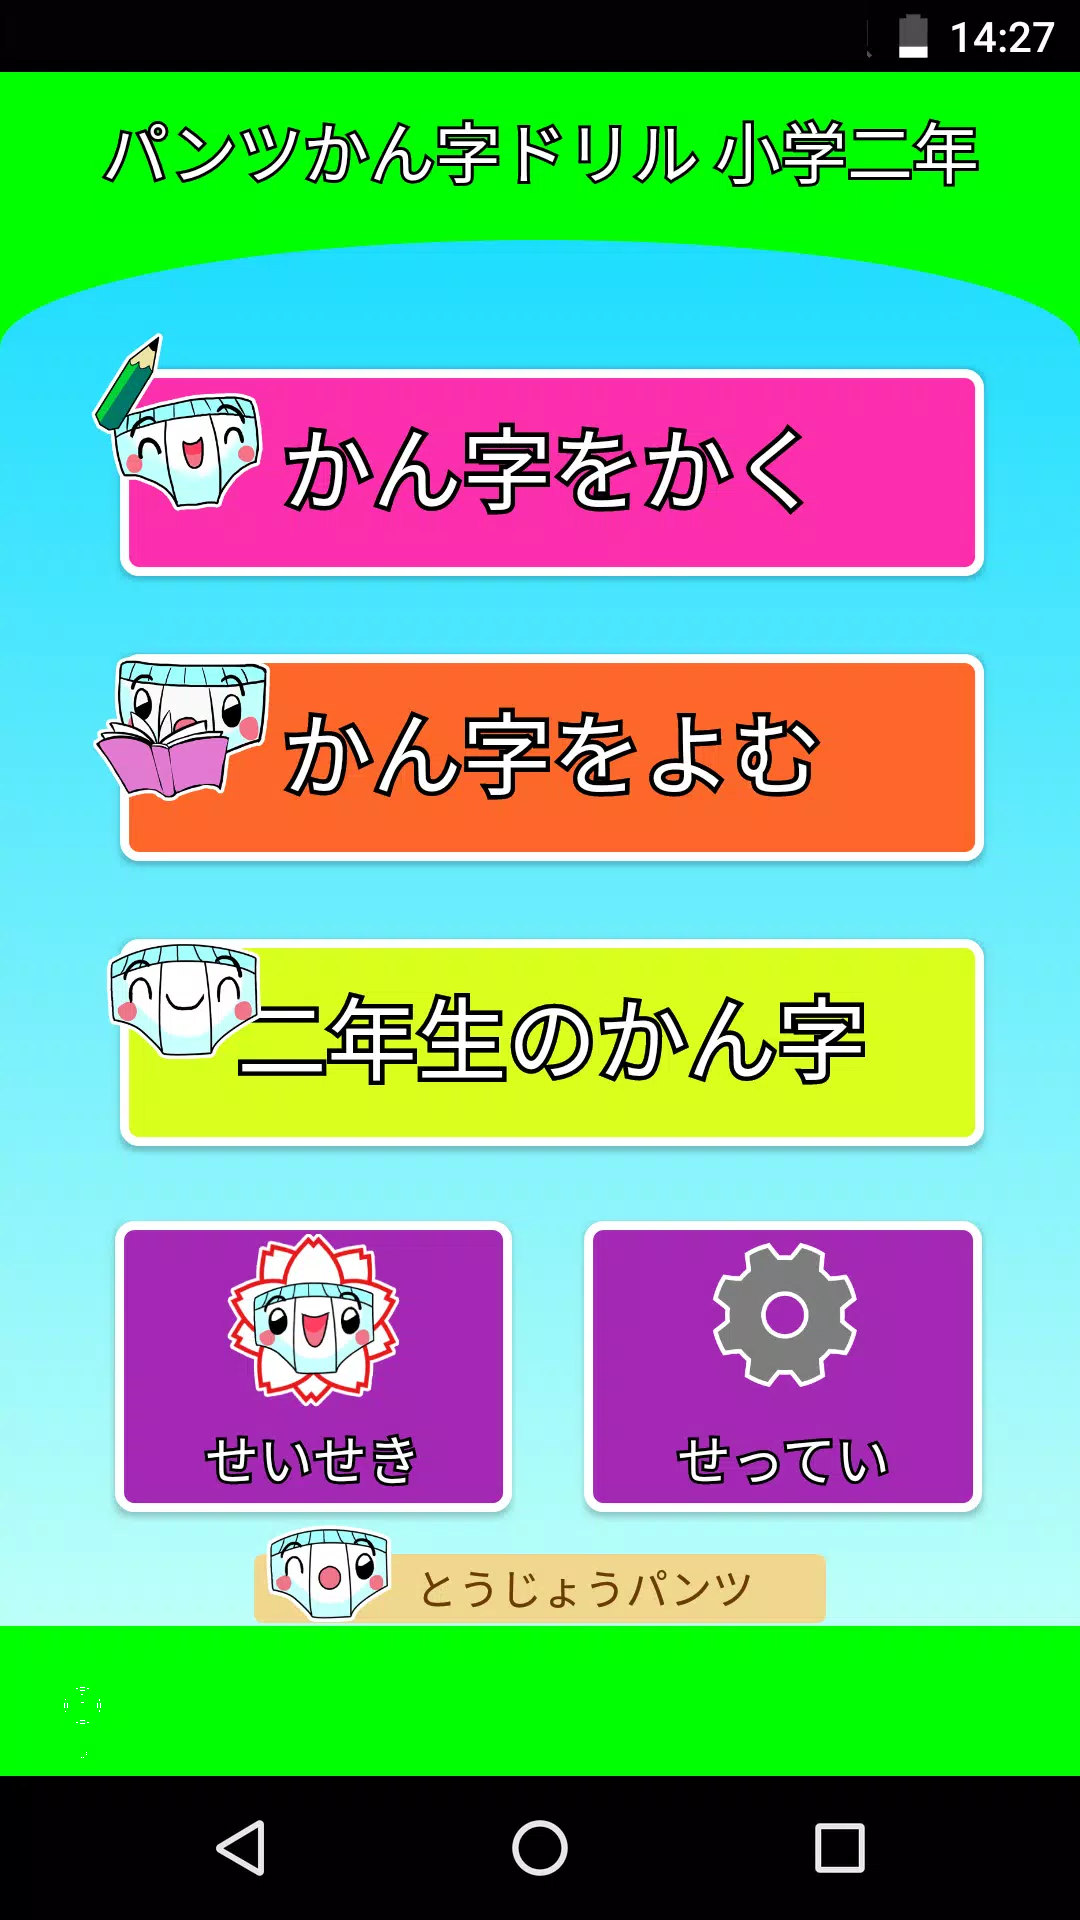 パンツ漢字ドリル 小学二年生 楽しく学べるアプリ For Android Apk Download